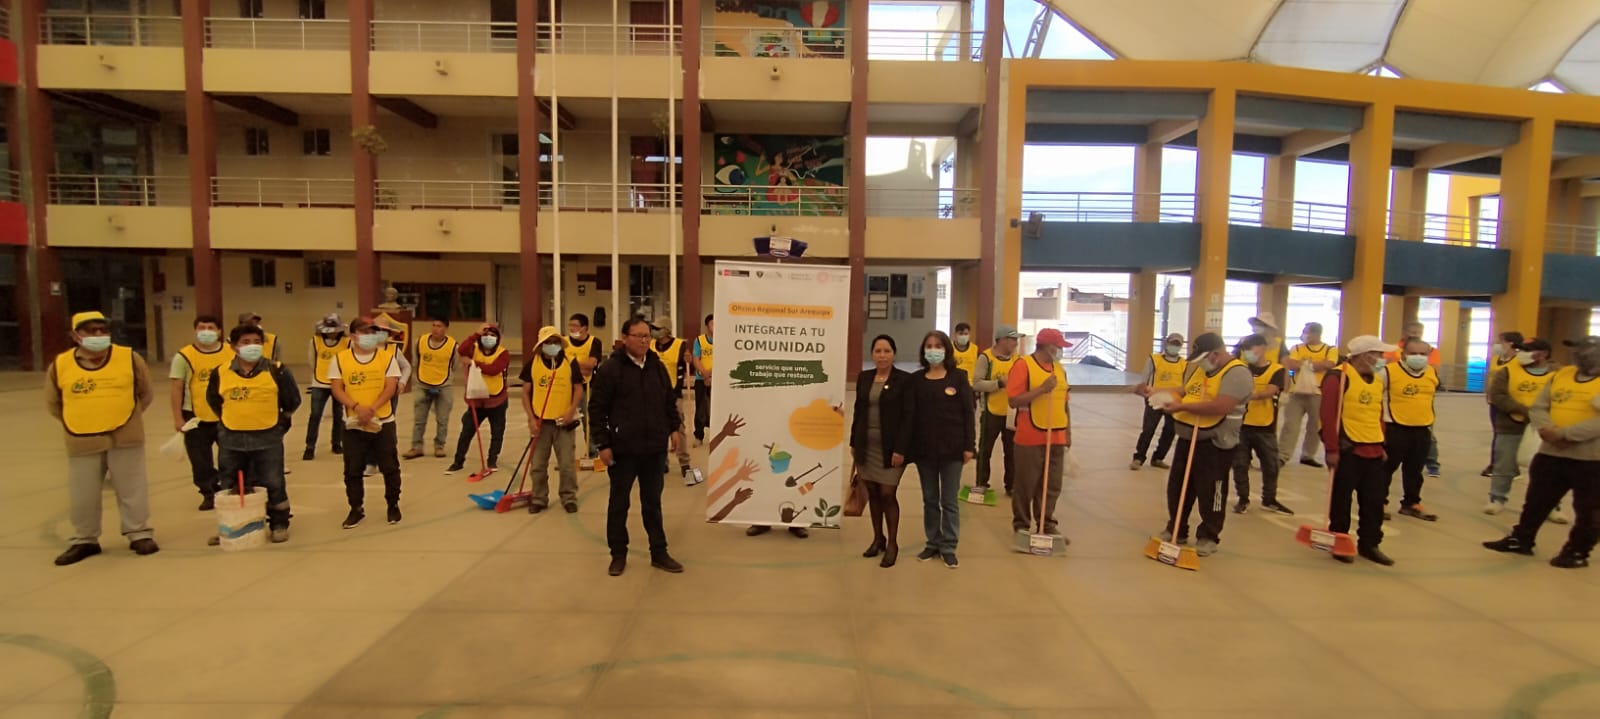 Personas que cumplen sentencia en libertad, participaron en jornada de limpieza de colegios en Arequipa